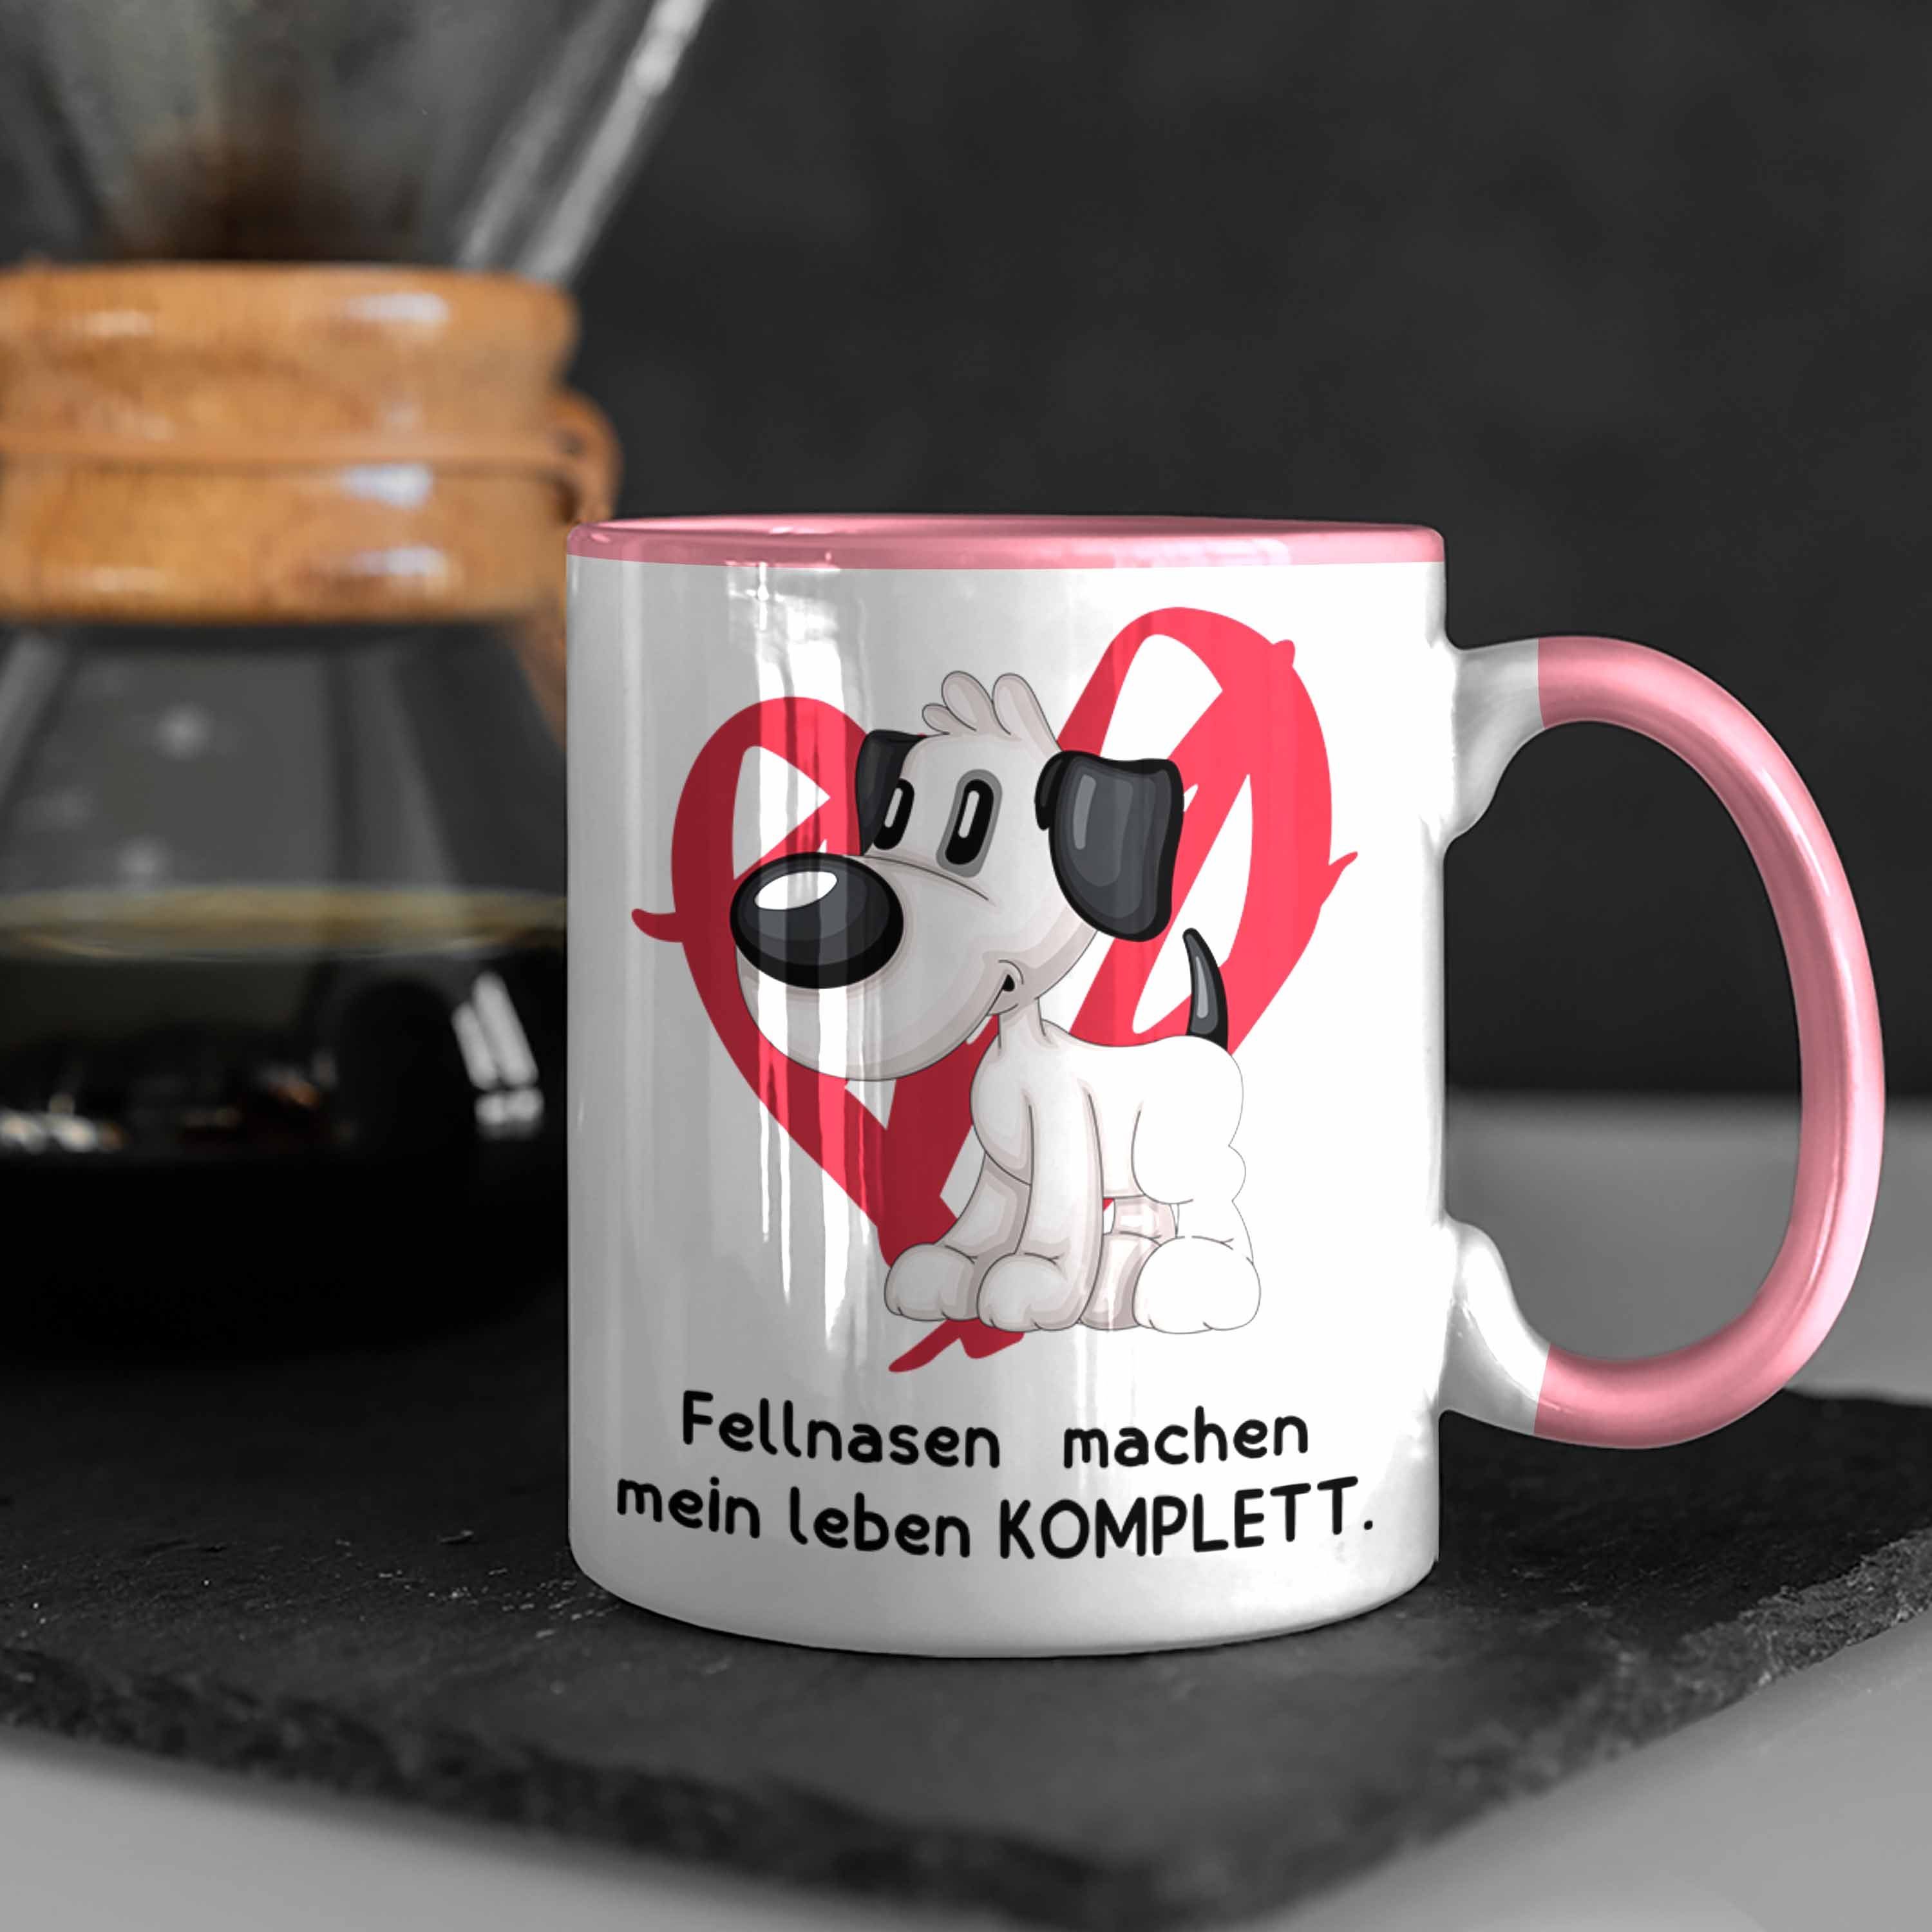 Trendation Tasse Hundebesitzer Kaffee-Becher machen Fellnasen Geschenk Leben Tasse Rosa mein